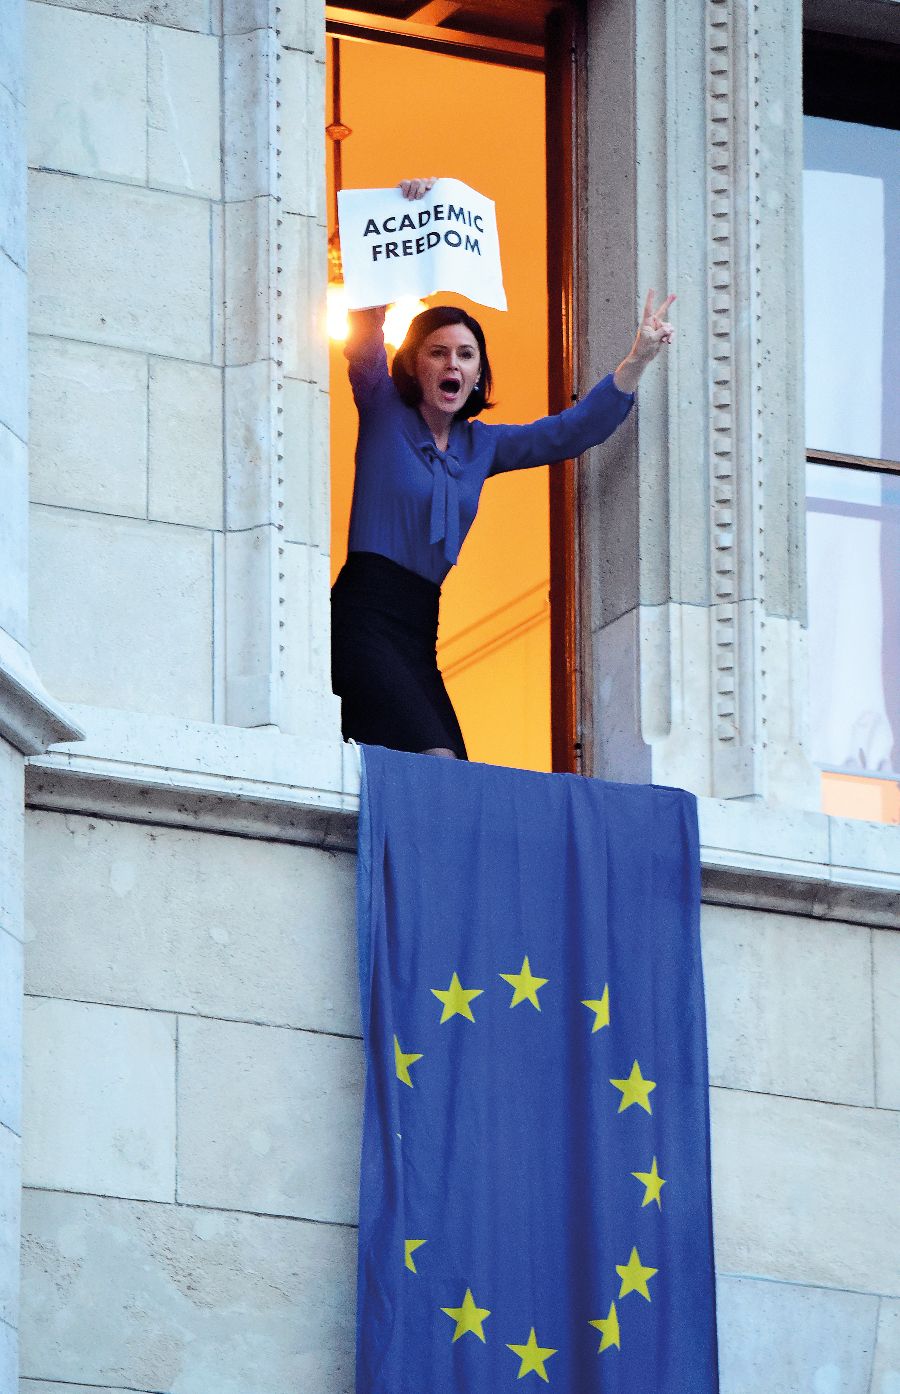 Az MSZP-s Kunhalmi Ágnes uniós zászlót lenget ki az Országház ablakából 2017-ben, akadémiai szabadságot követelve. <br> Fotó: AFP / Kisbenedek Attila